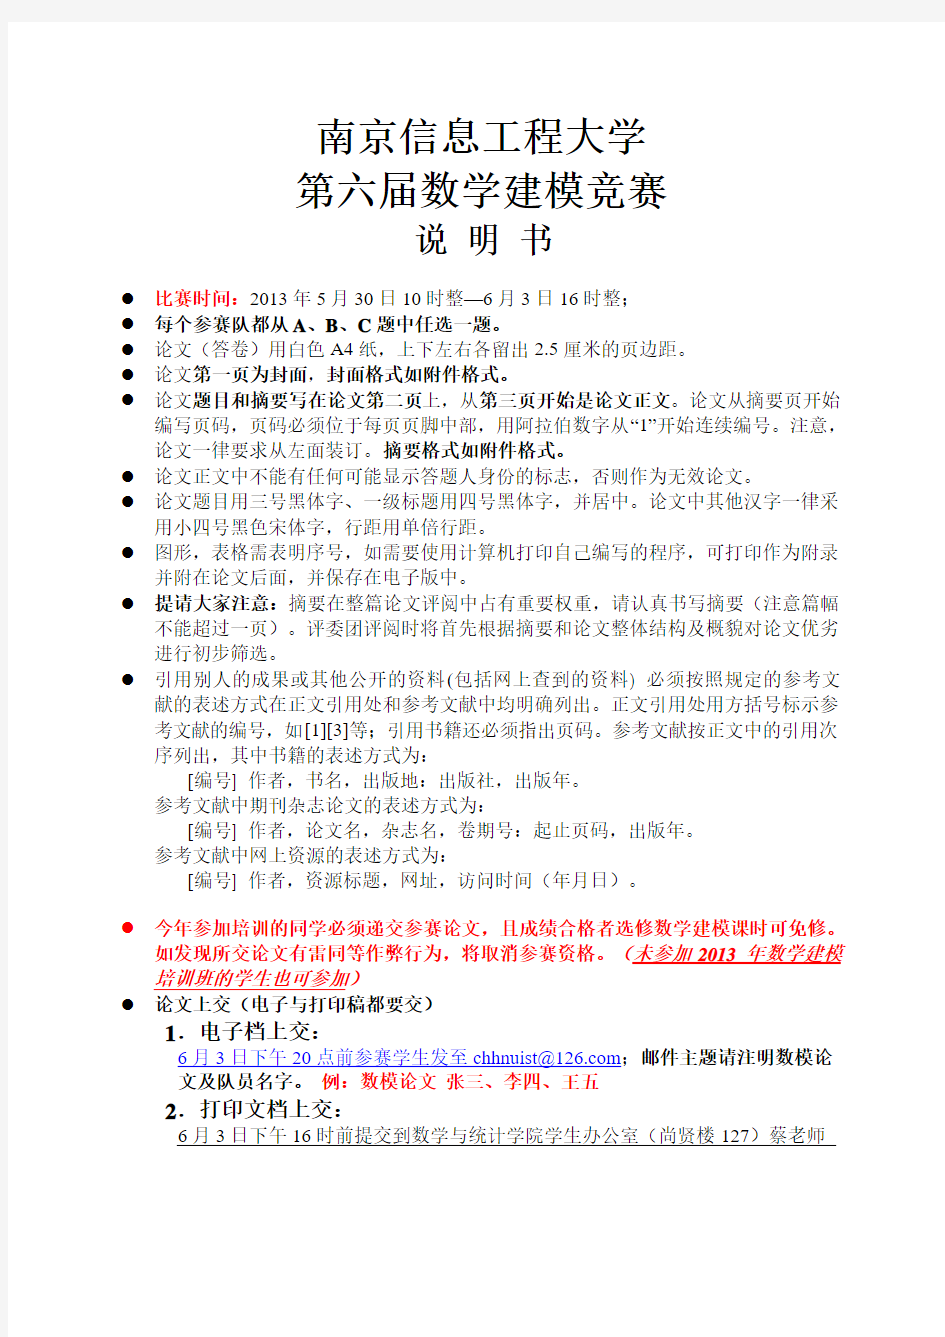 南京信息工程大学校内数学建模竞赛论文格式规范说明